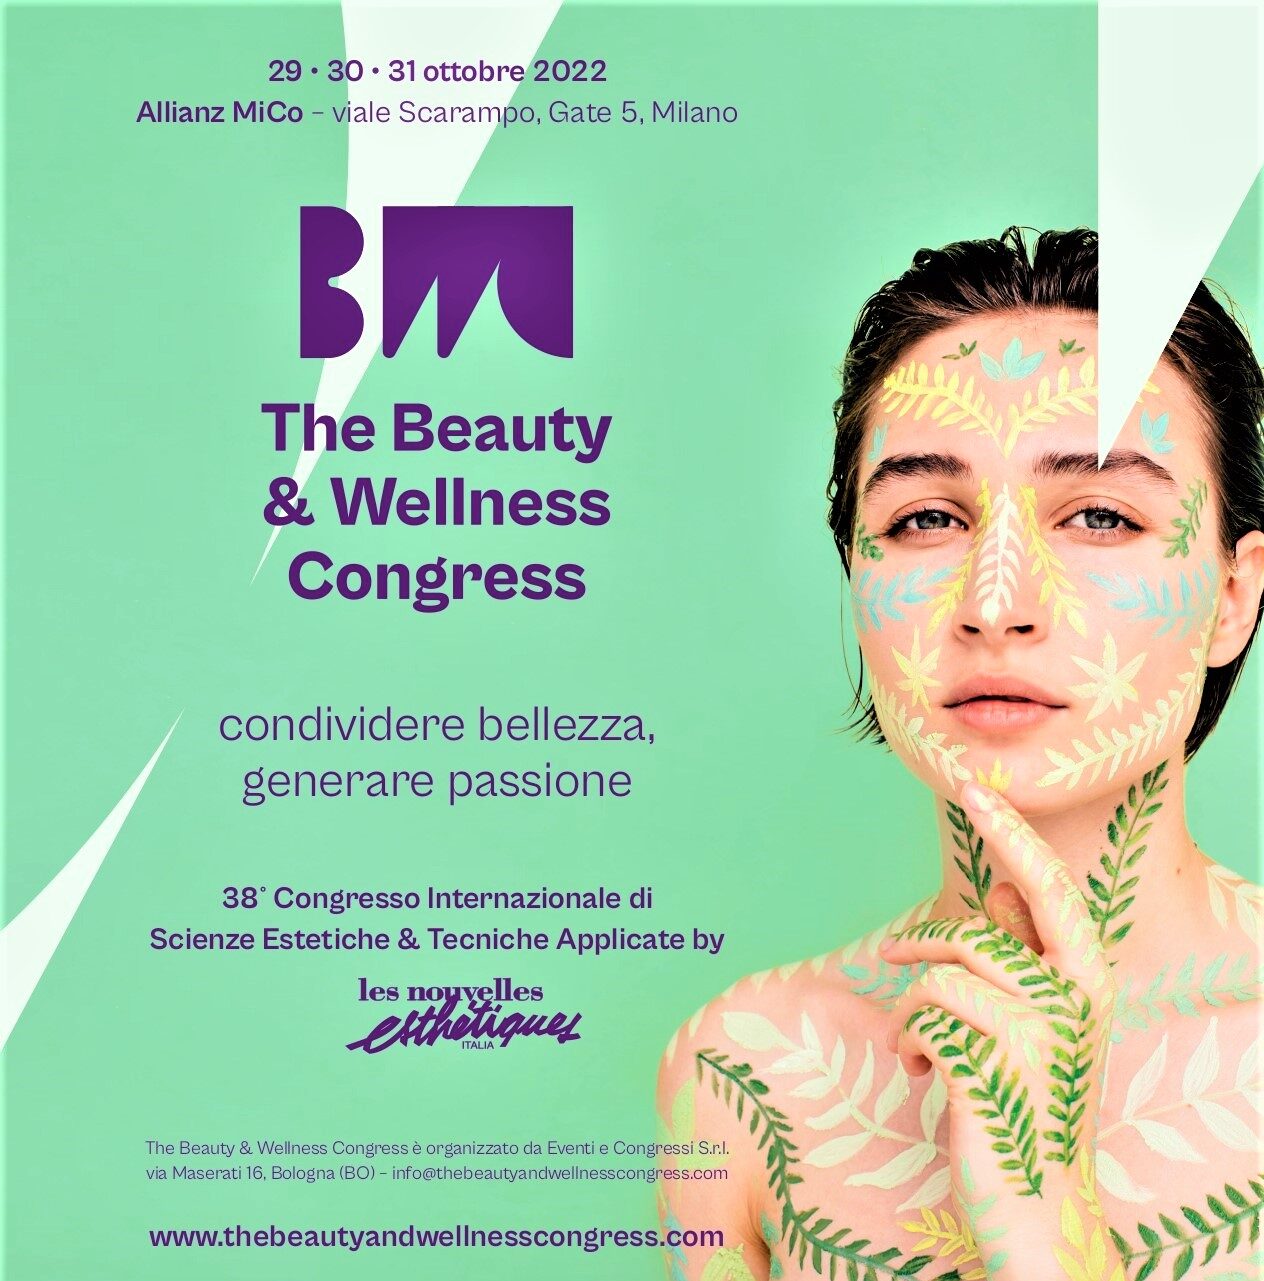 The Beauty & Wellness Congress